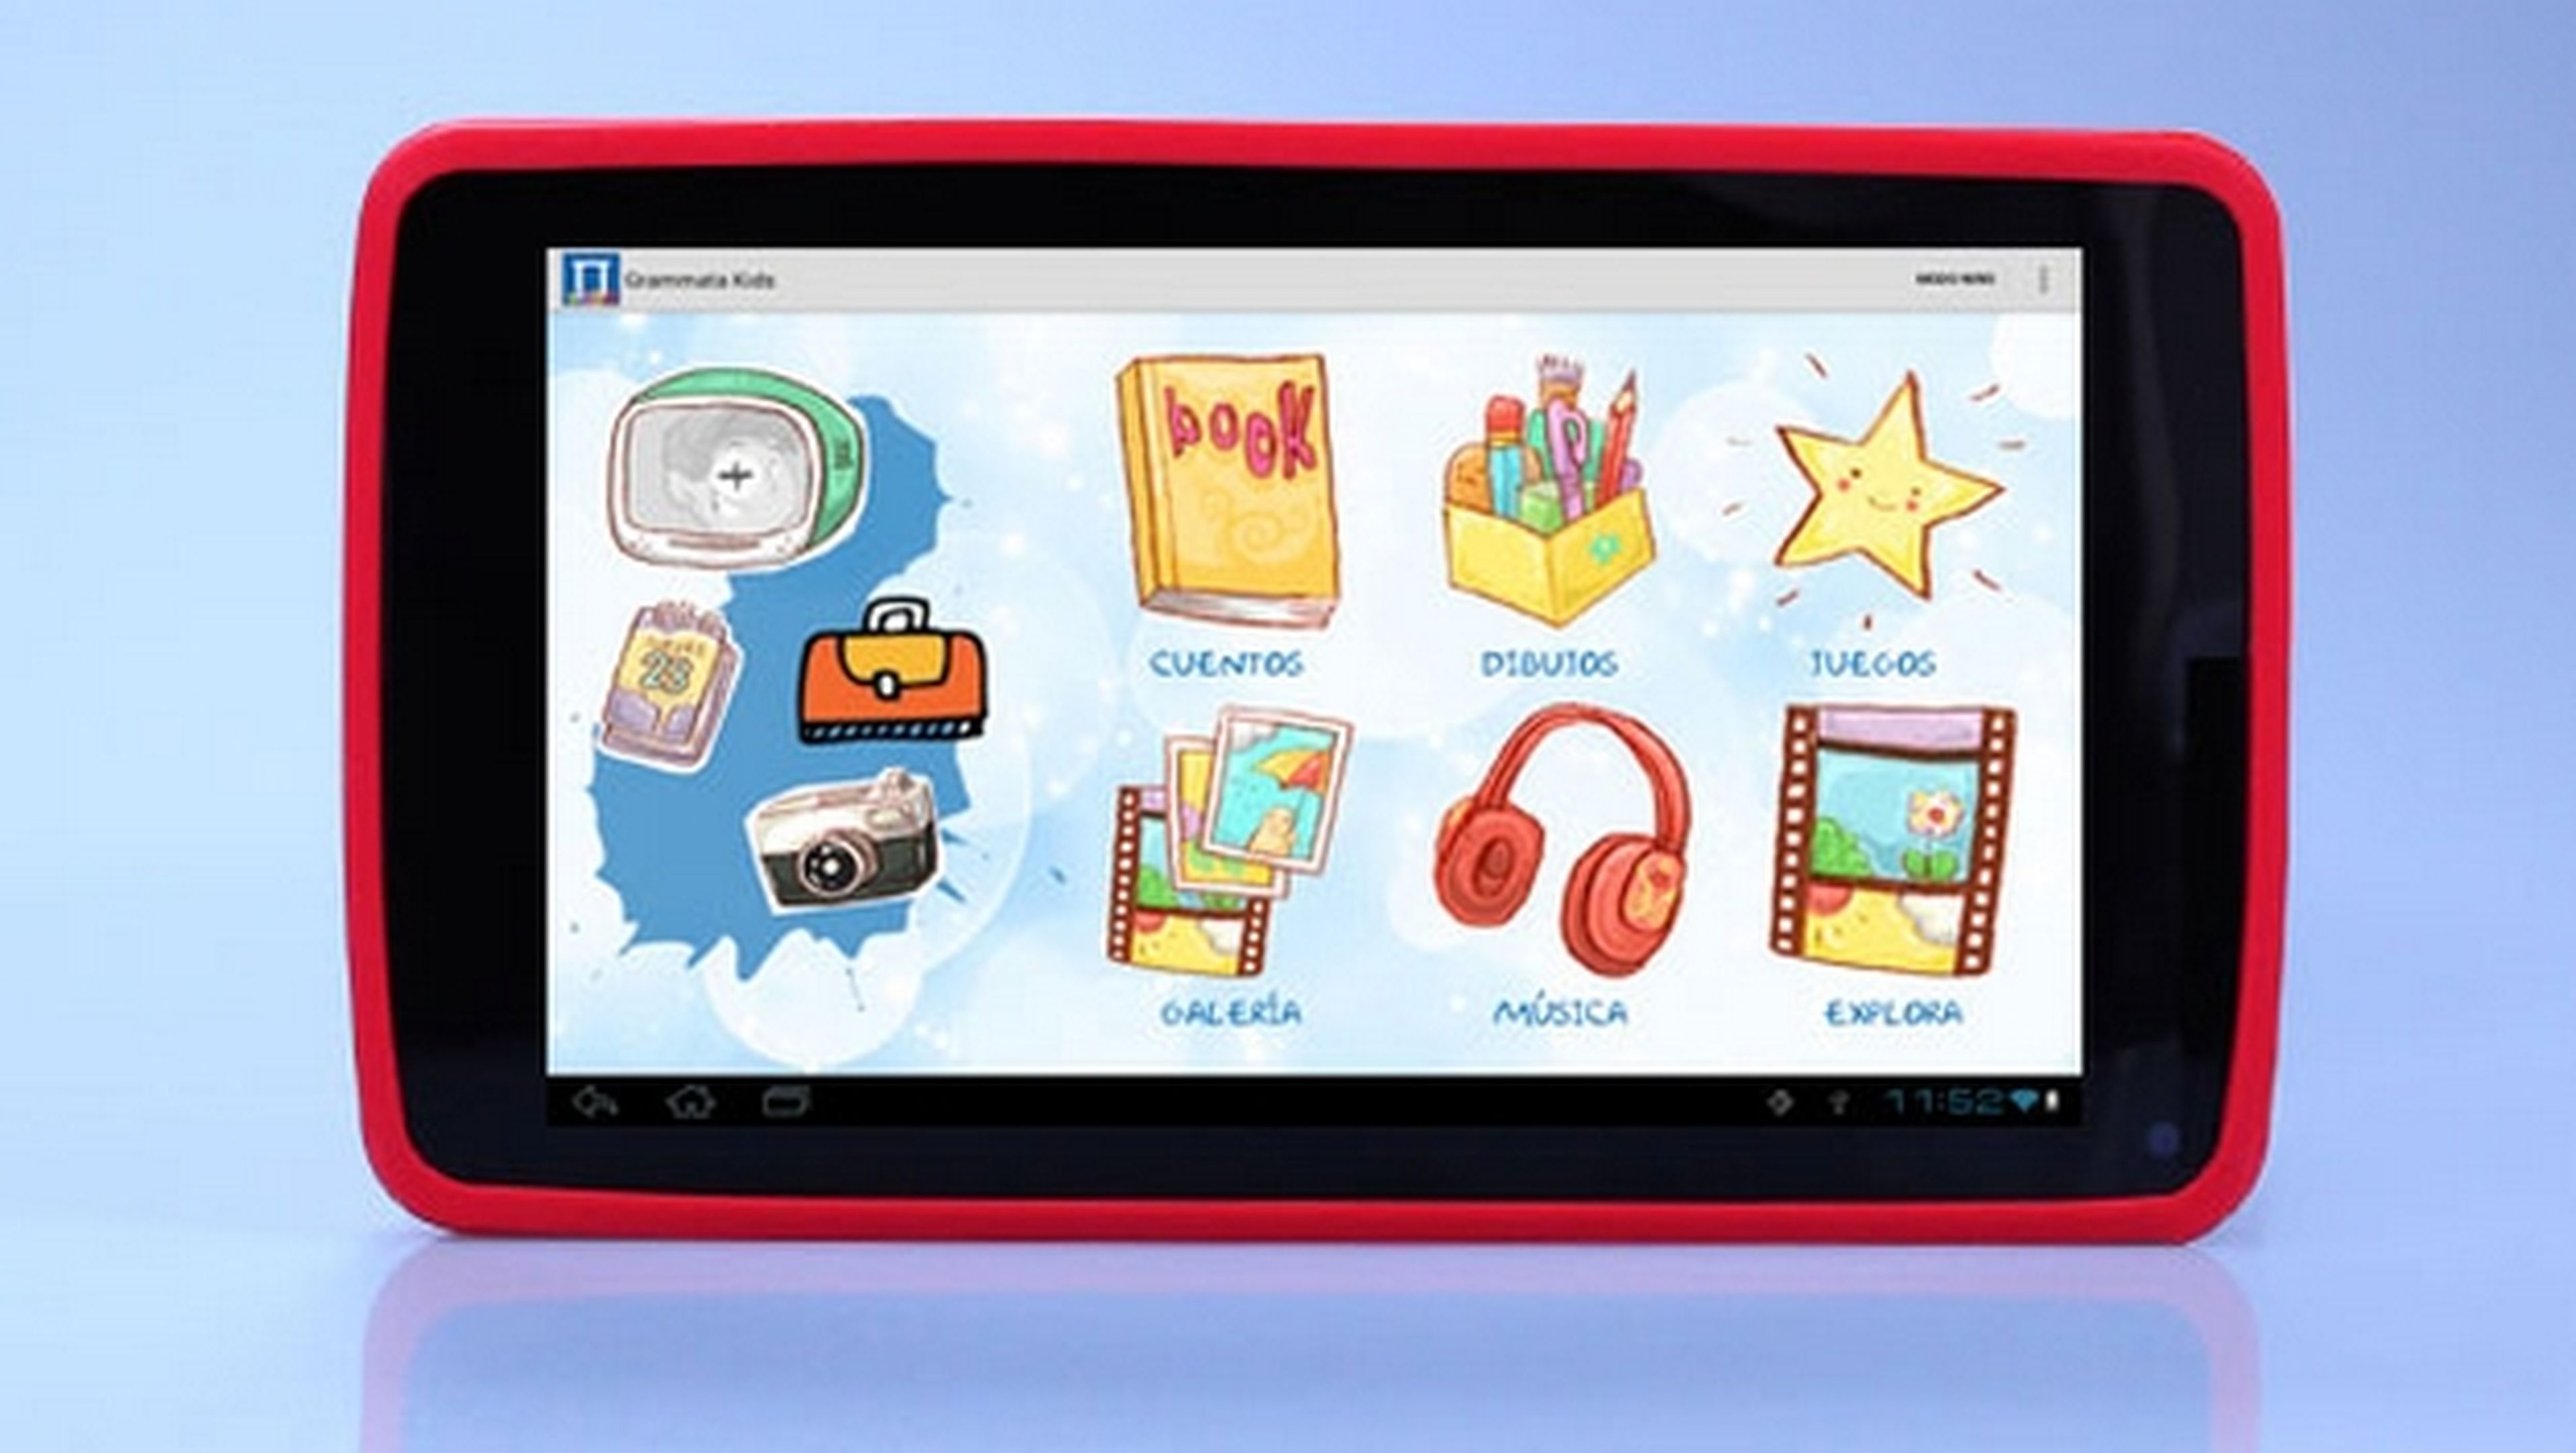 Papyre Pad 716 Kids, un tablet de 7 pulgadas para niños, desarrollada por pedagogos. Con 1300 ebooks gratuitos.